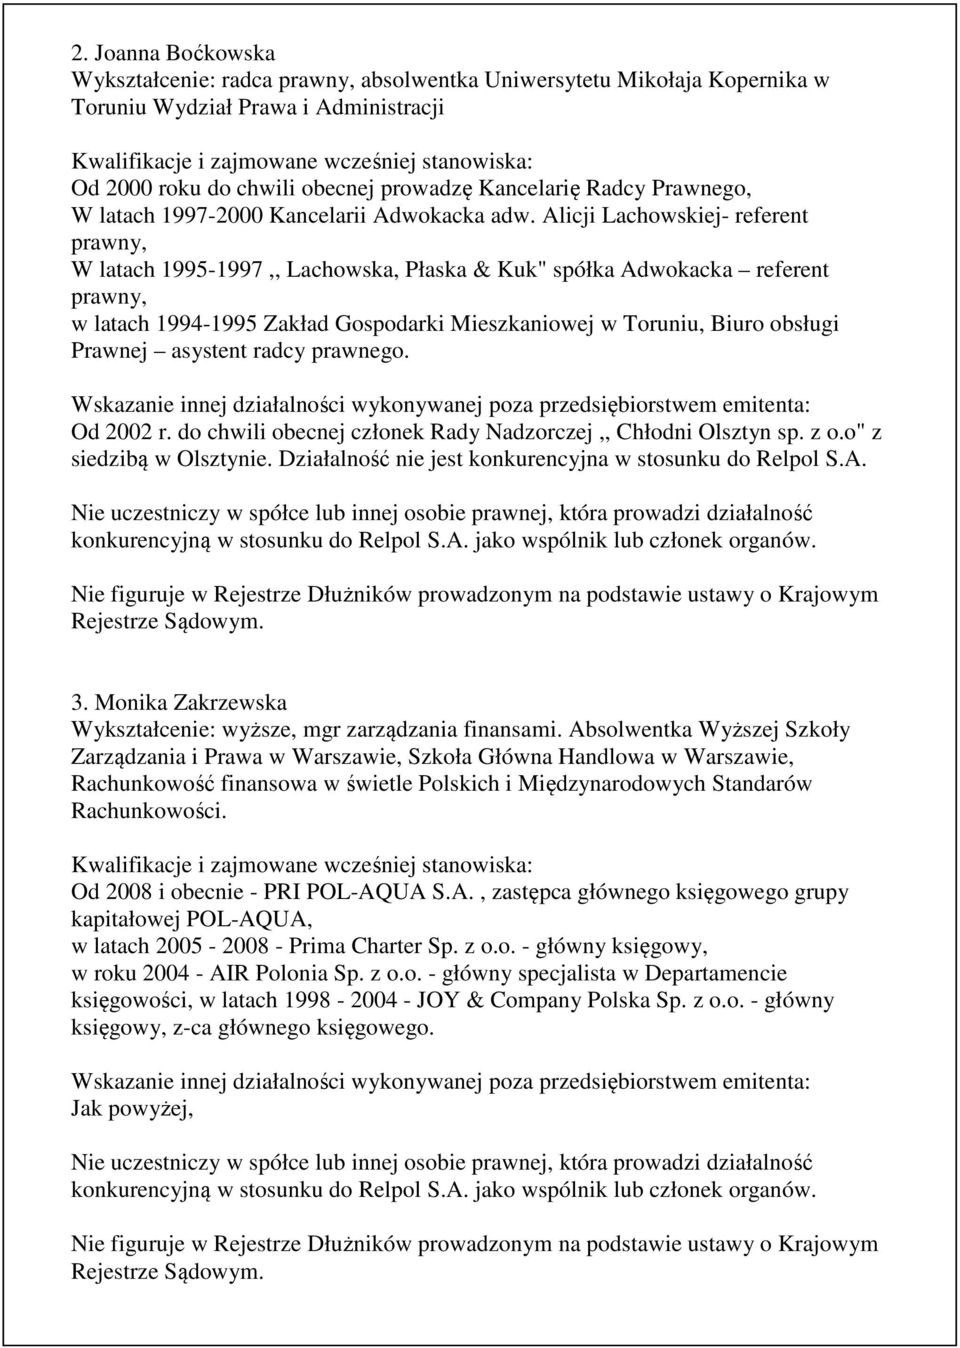 Alicji Lachowskiej- referent prawny, W latach 1995-1997,, Lachowska, Płaska & Kuk" spółka Adwokacka referent prawny, w latach 1994-1995 Zakład Gospodarki Mieszkaniowej w Toruniu, Biuro obsługi